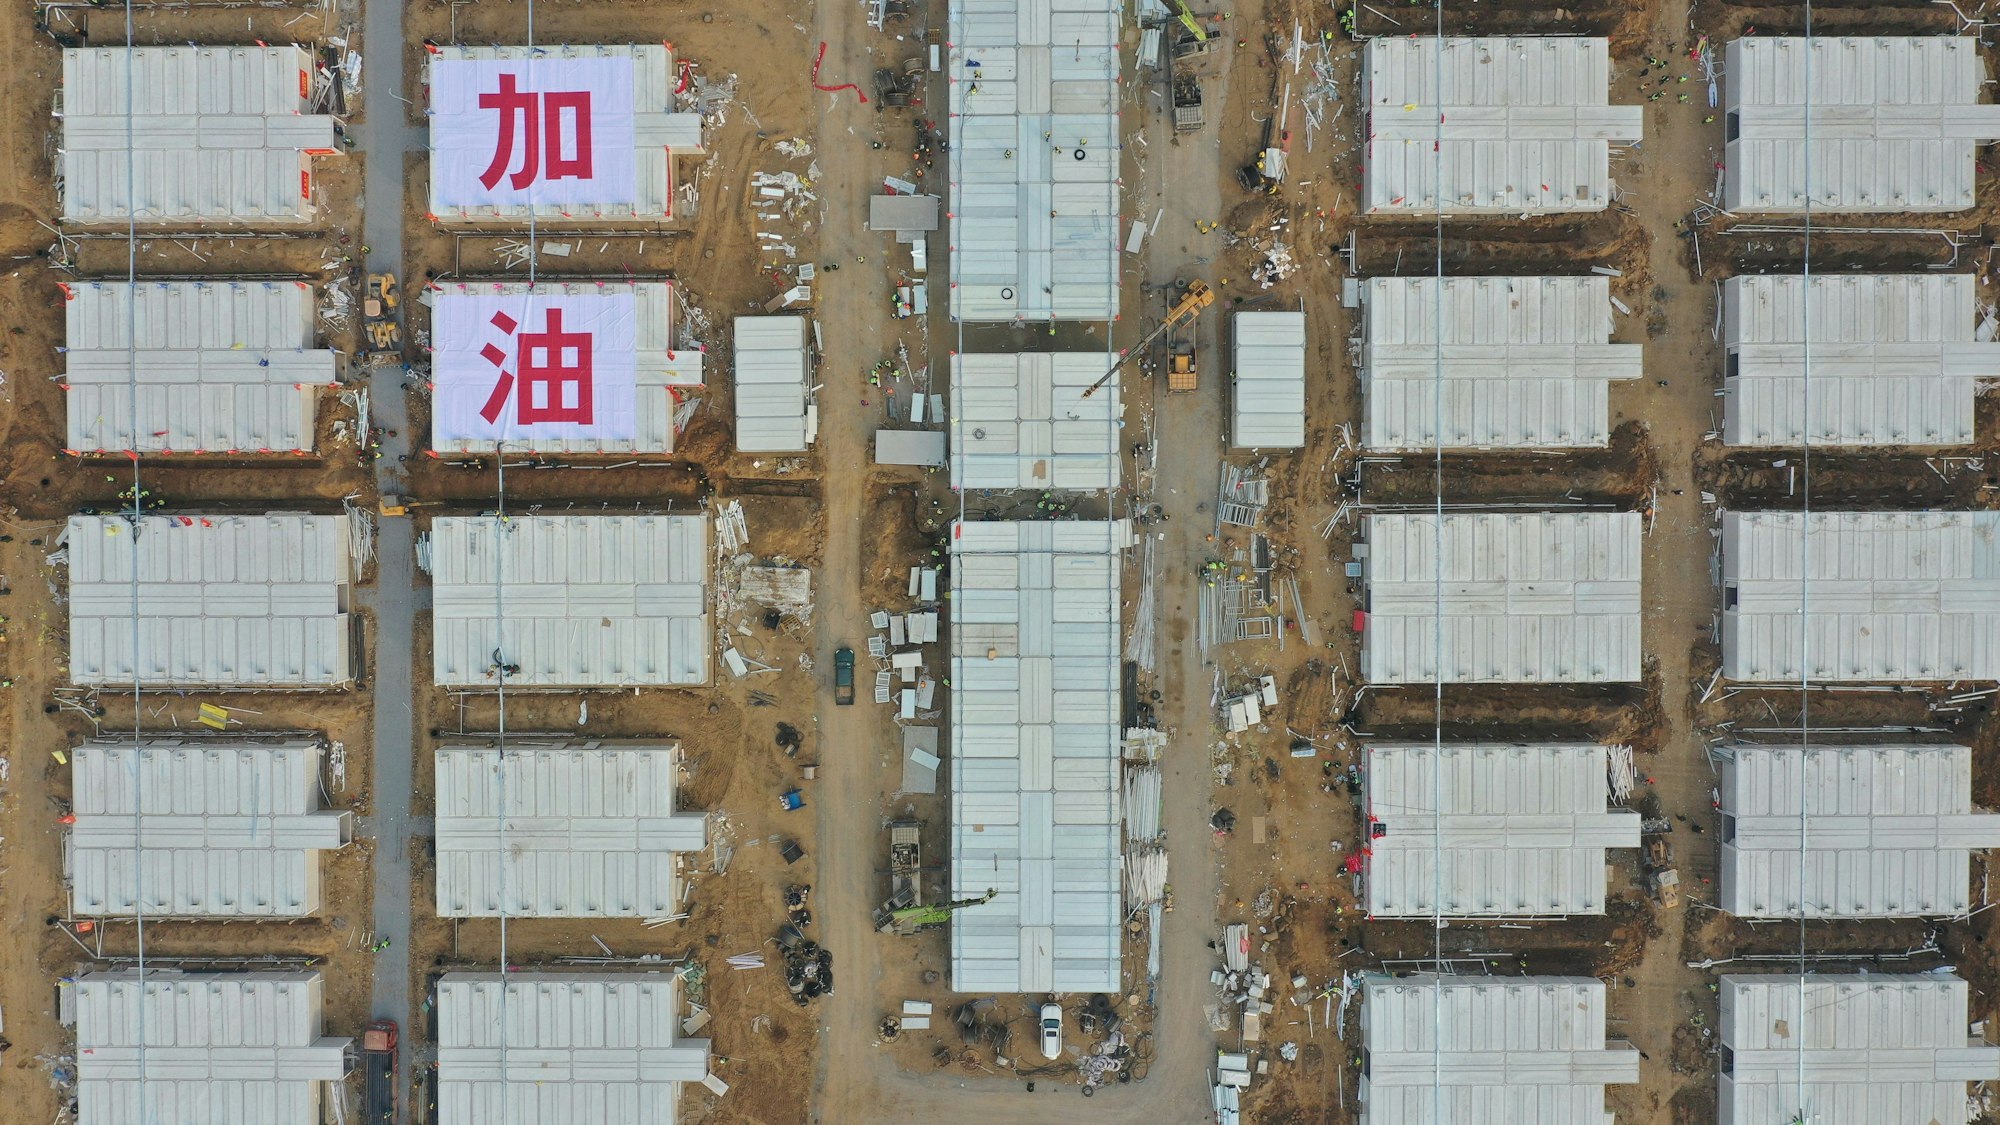 Blick auf die Baustelle des Quarantänezentrums Huangzhuang Apartment. Mit der Lieferung von 606 Quarantänezimmern und unterstützenden Einrichtungen stand im Januar 2021 der Bau des Huangzhuang Apartment Corona-Quarantänezentrums kurz vor der Fertigstellung.